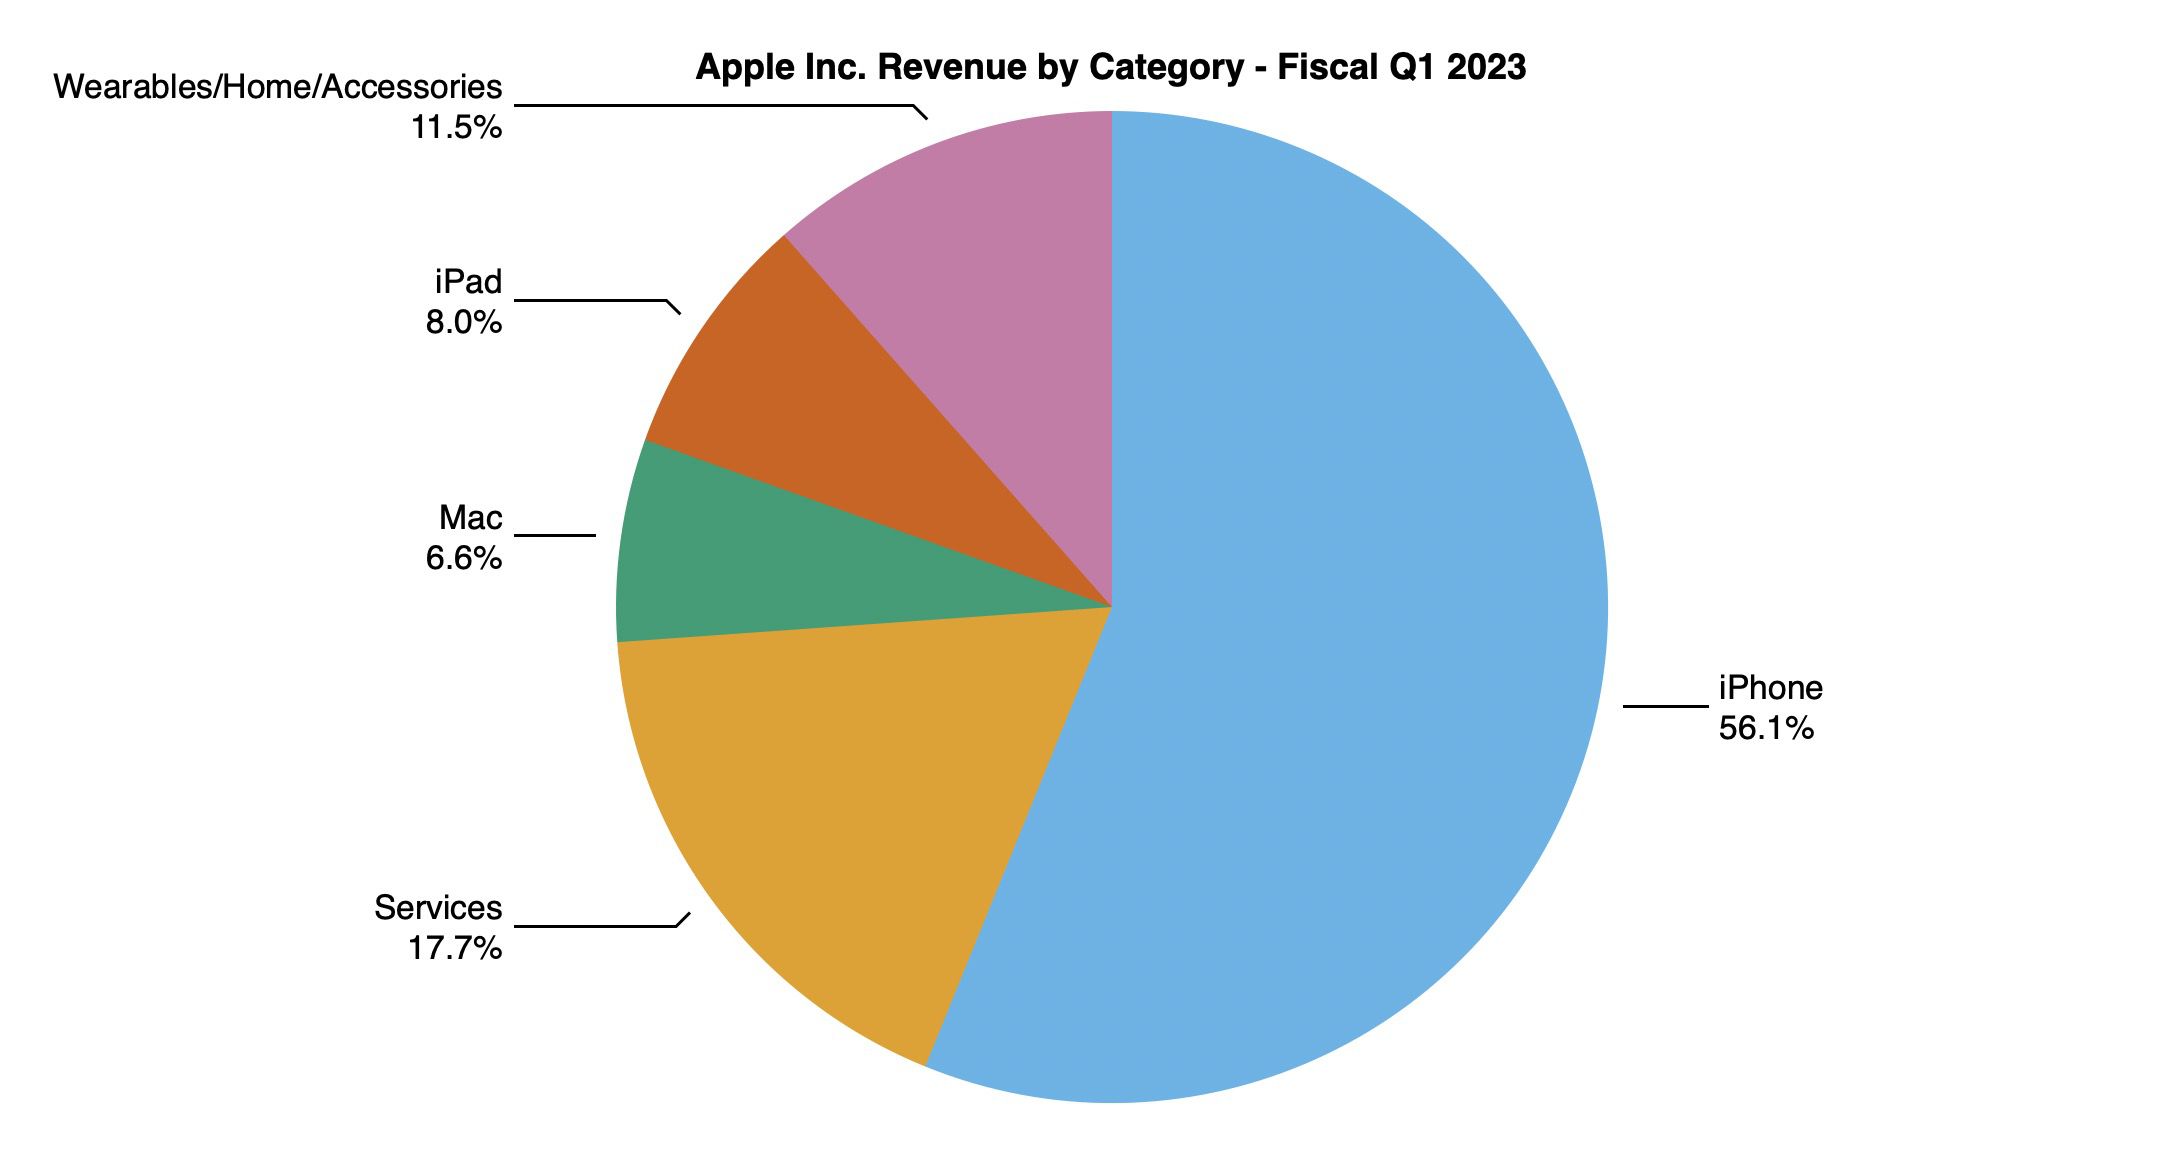 Apple Reports 1Q 2023 Results 30.0B Profit on 117.2B Revenue Amid